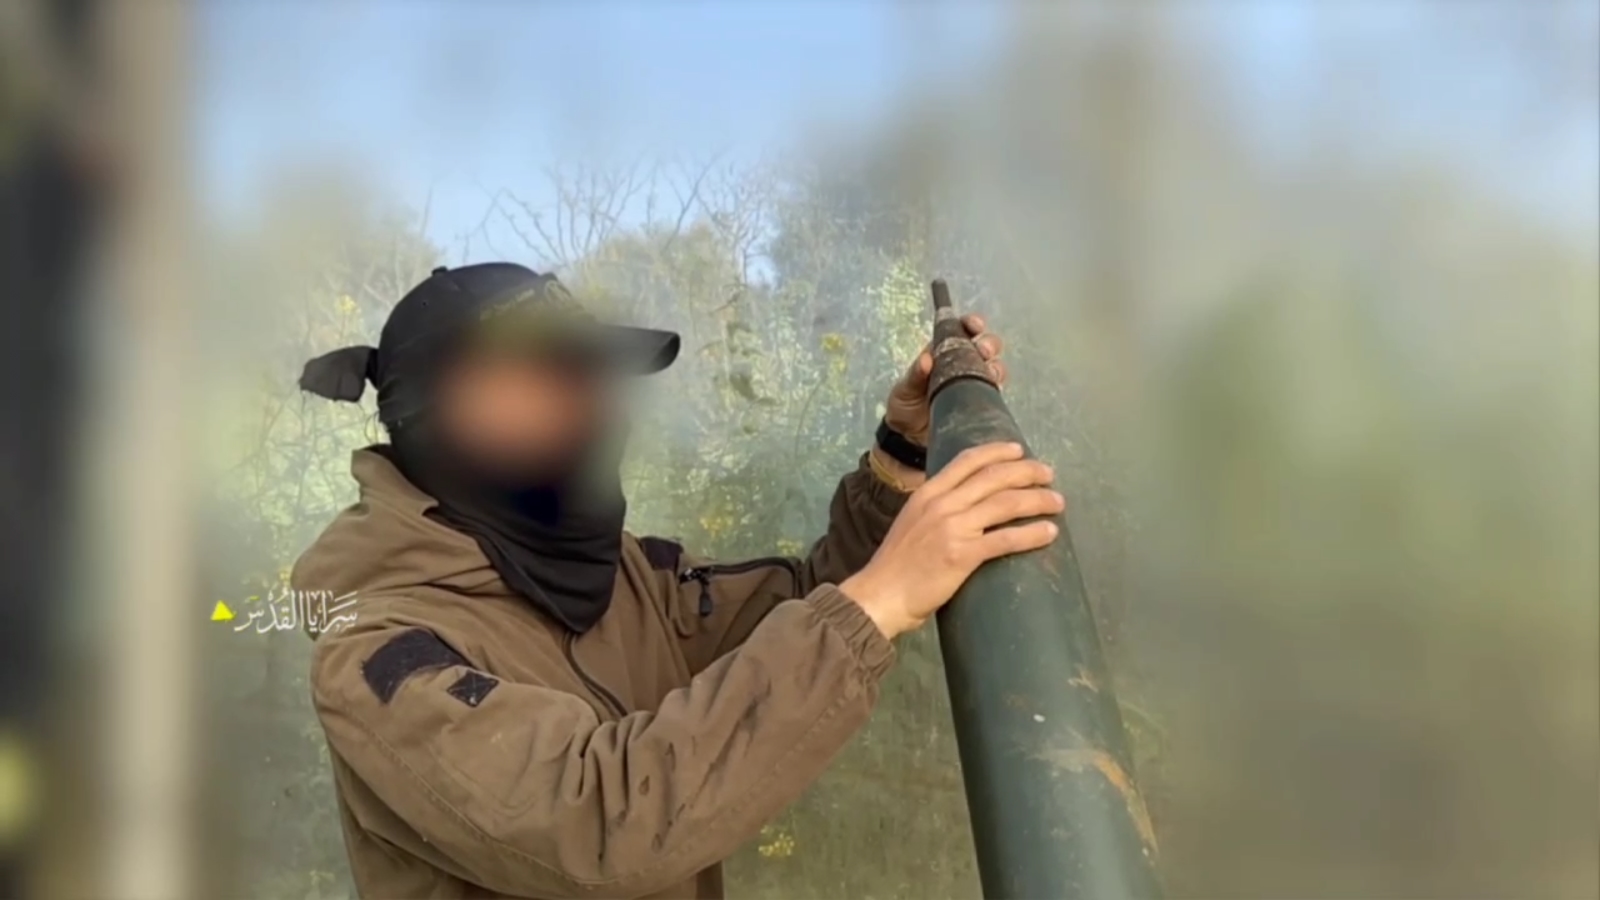 المقاومة تستهدف مستوطنات غلاف غزة بالصواريخ و"جيش" الاحتلال في النصيرات بالقذائف